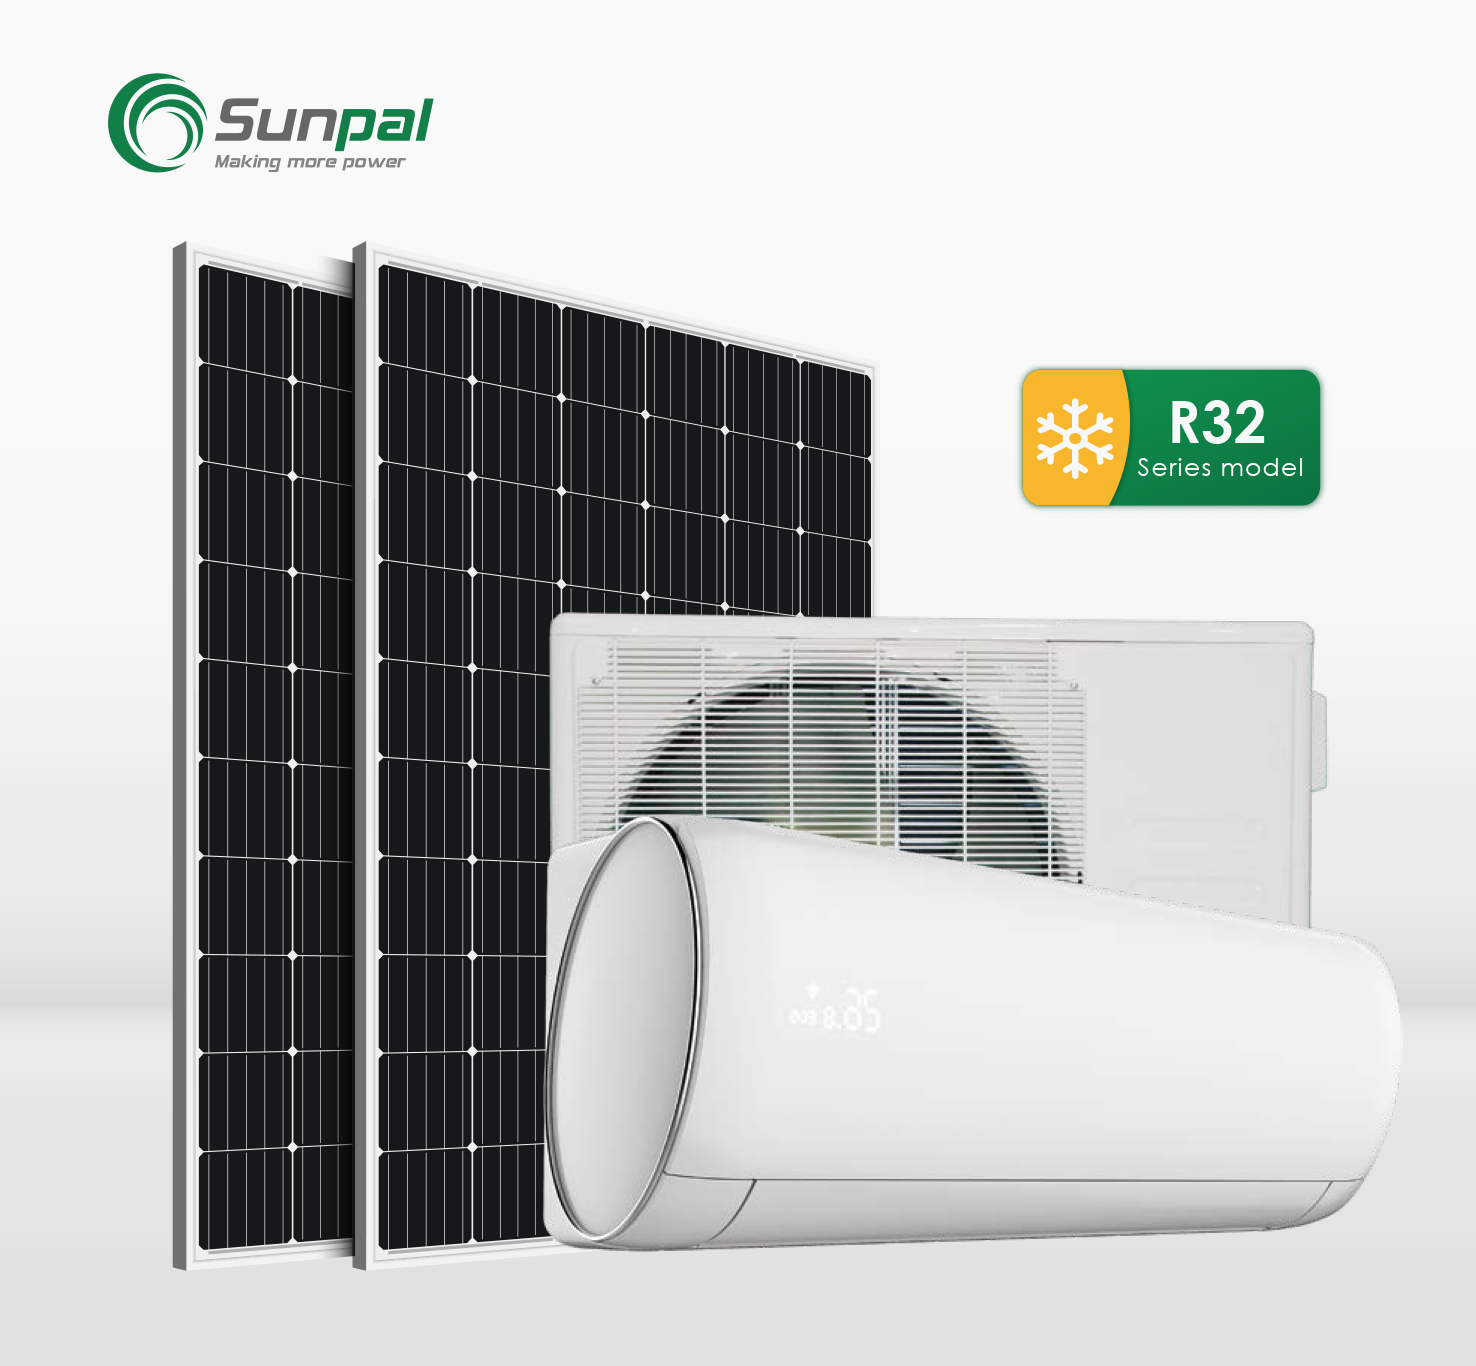 Solar Air Conditioner 12,000 BTU